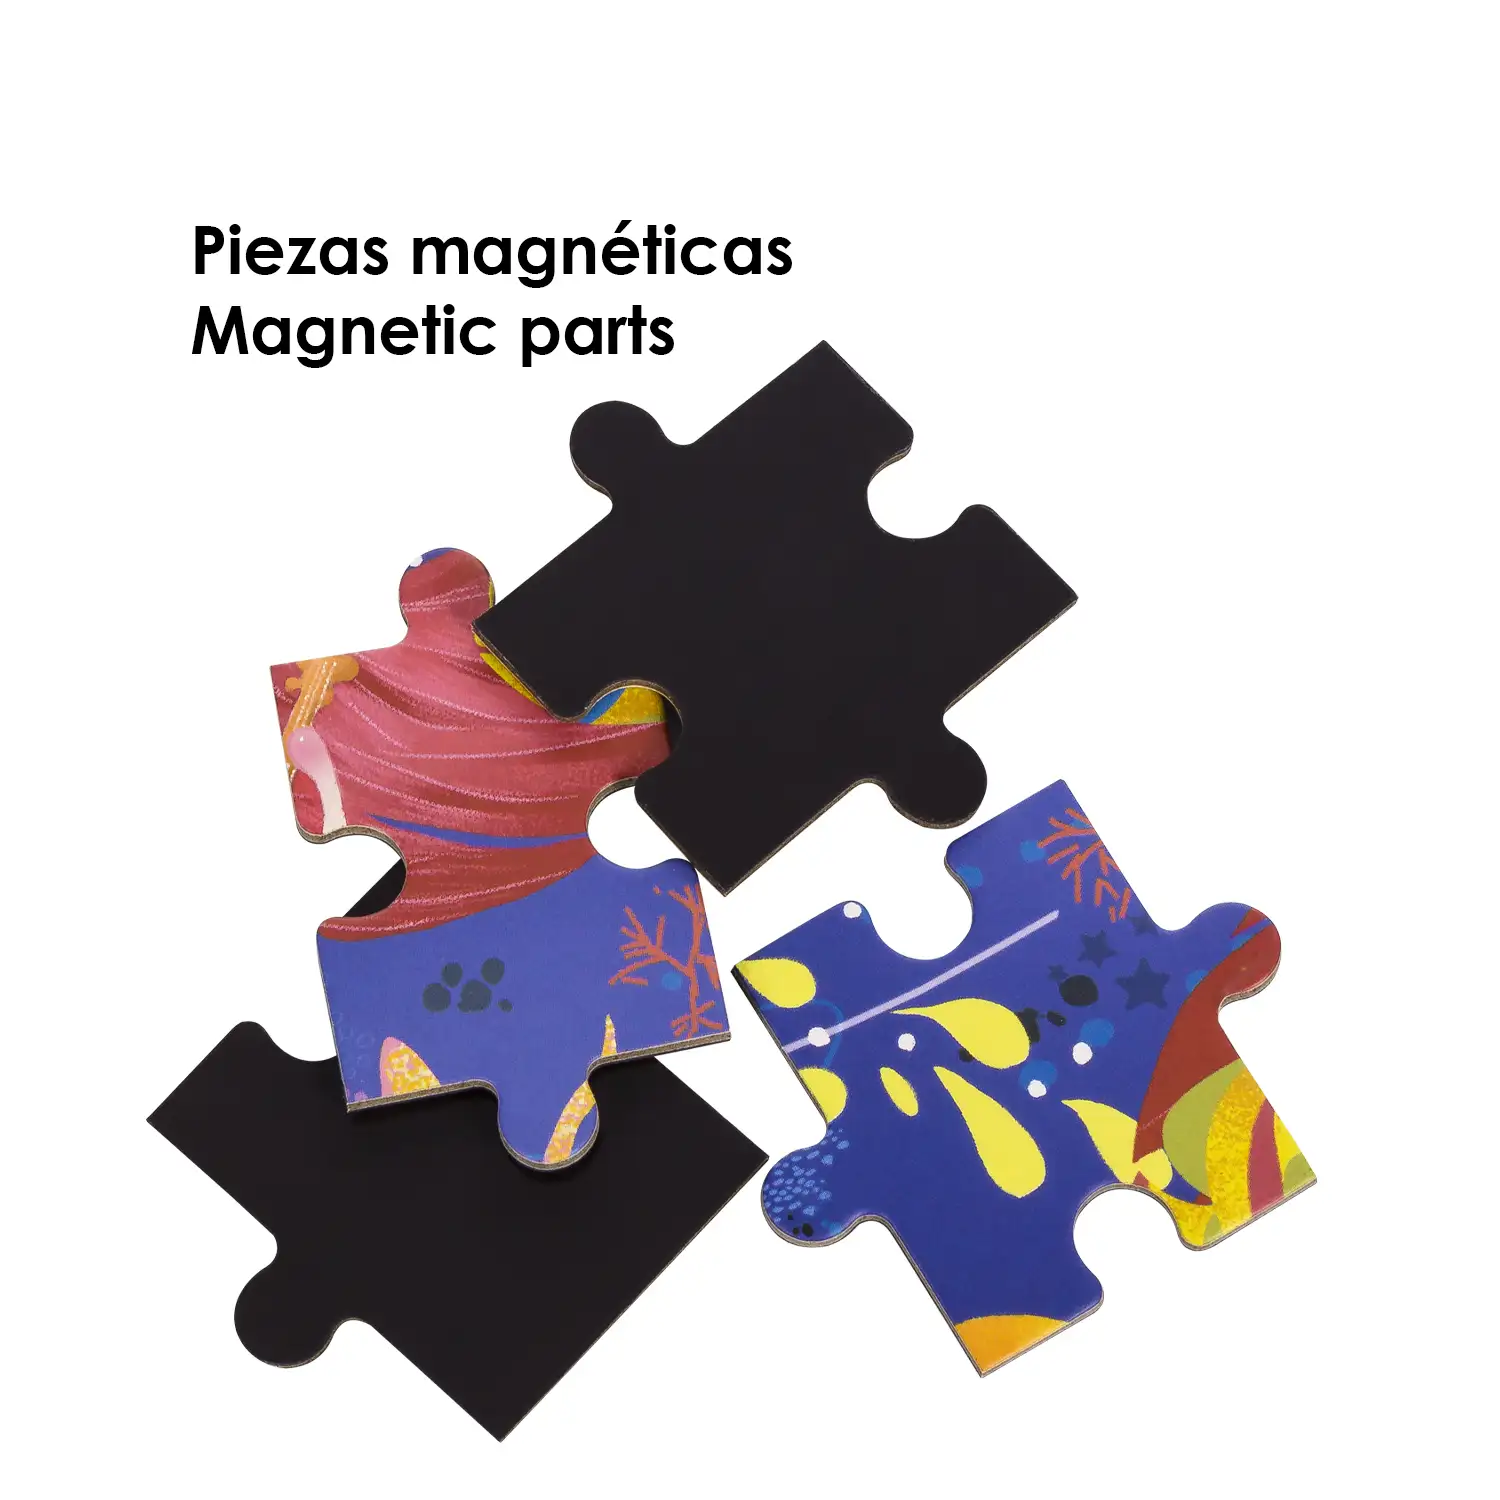 Puzle diseño Un Cuento de Hadas de 40 piezas magnético. Formato tipo libro, 2 puzzles de 20 piezas en 1.